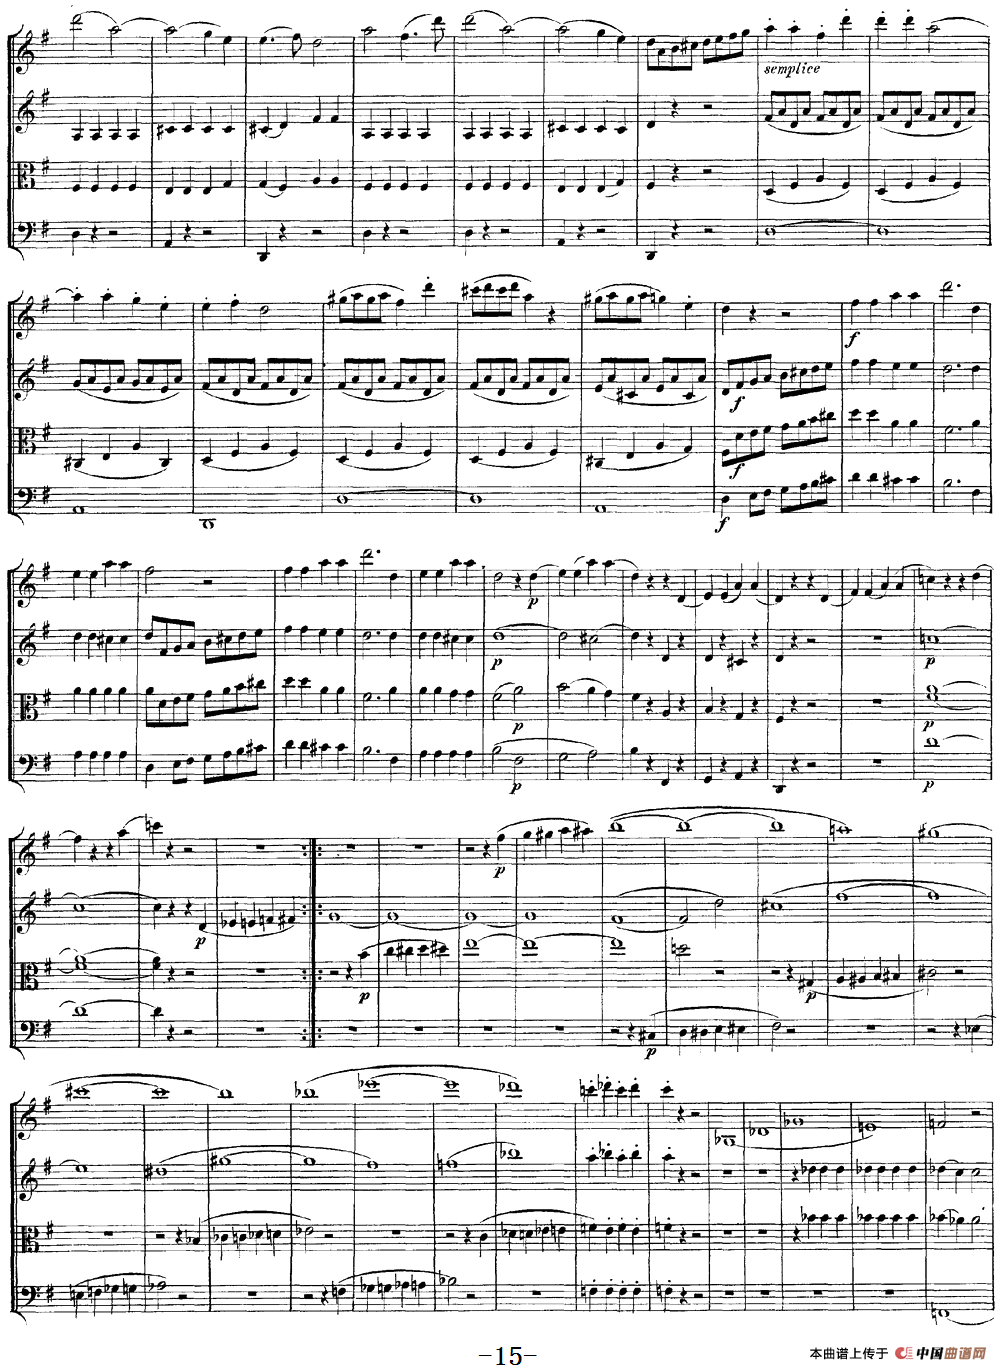 Mozart《Quartet No.14 in G Major,K.387》（总谱）